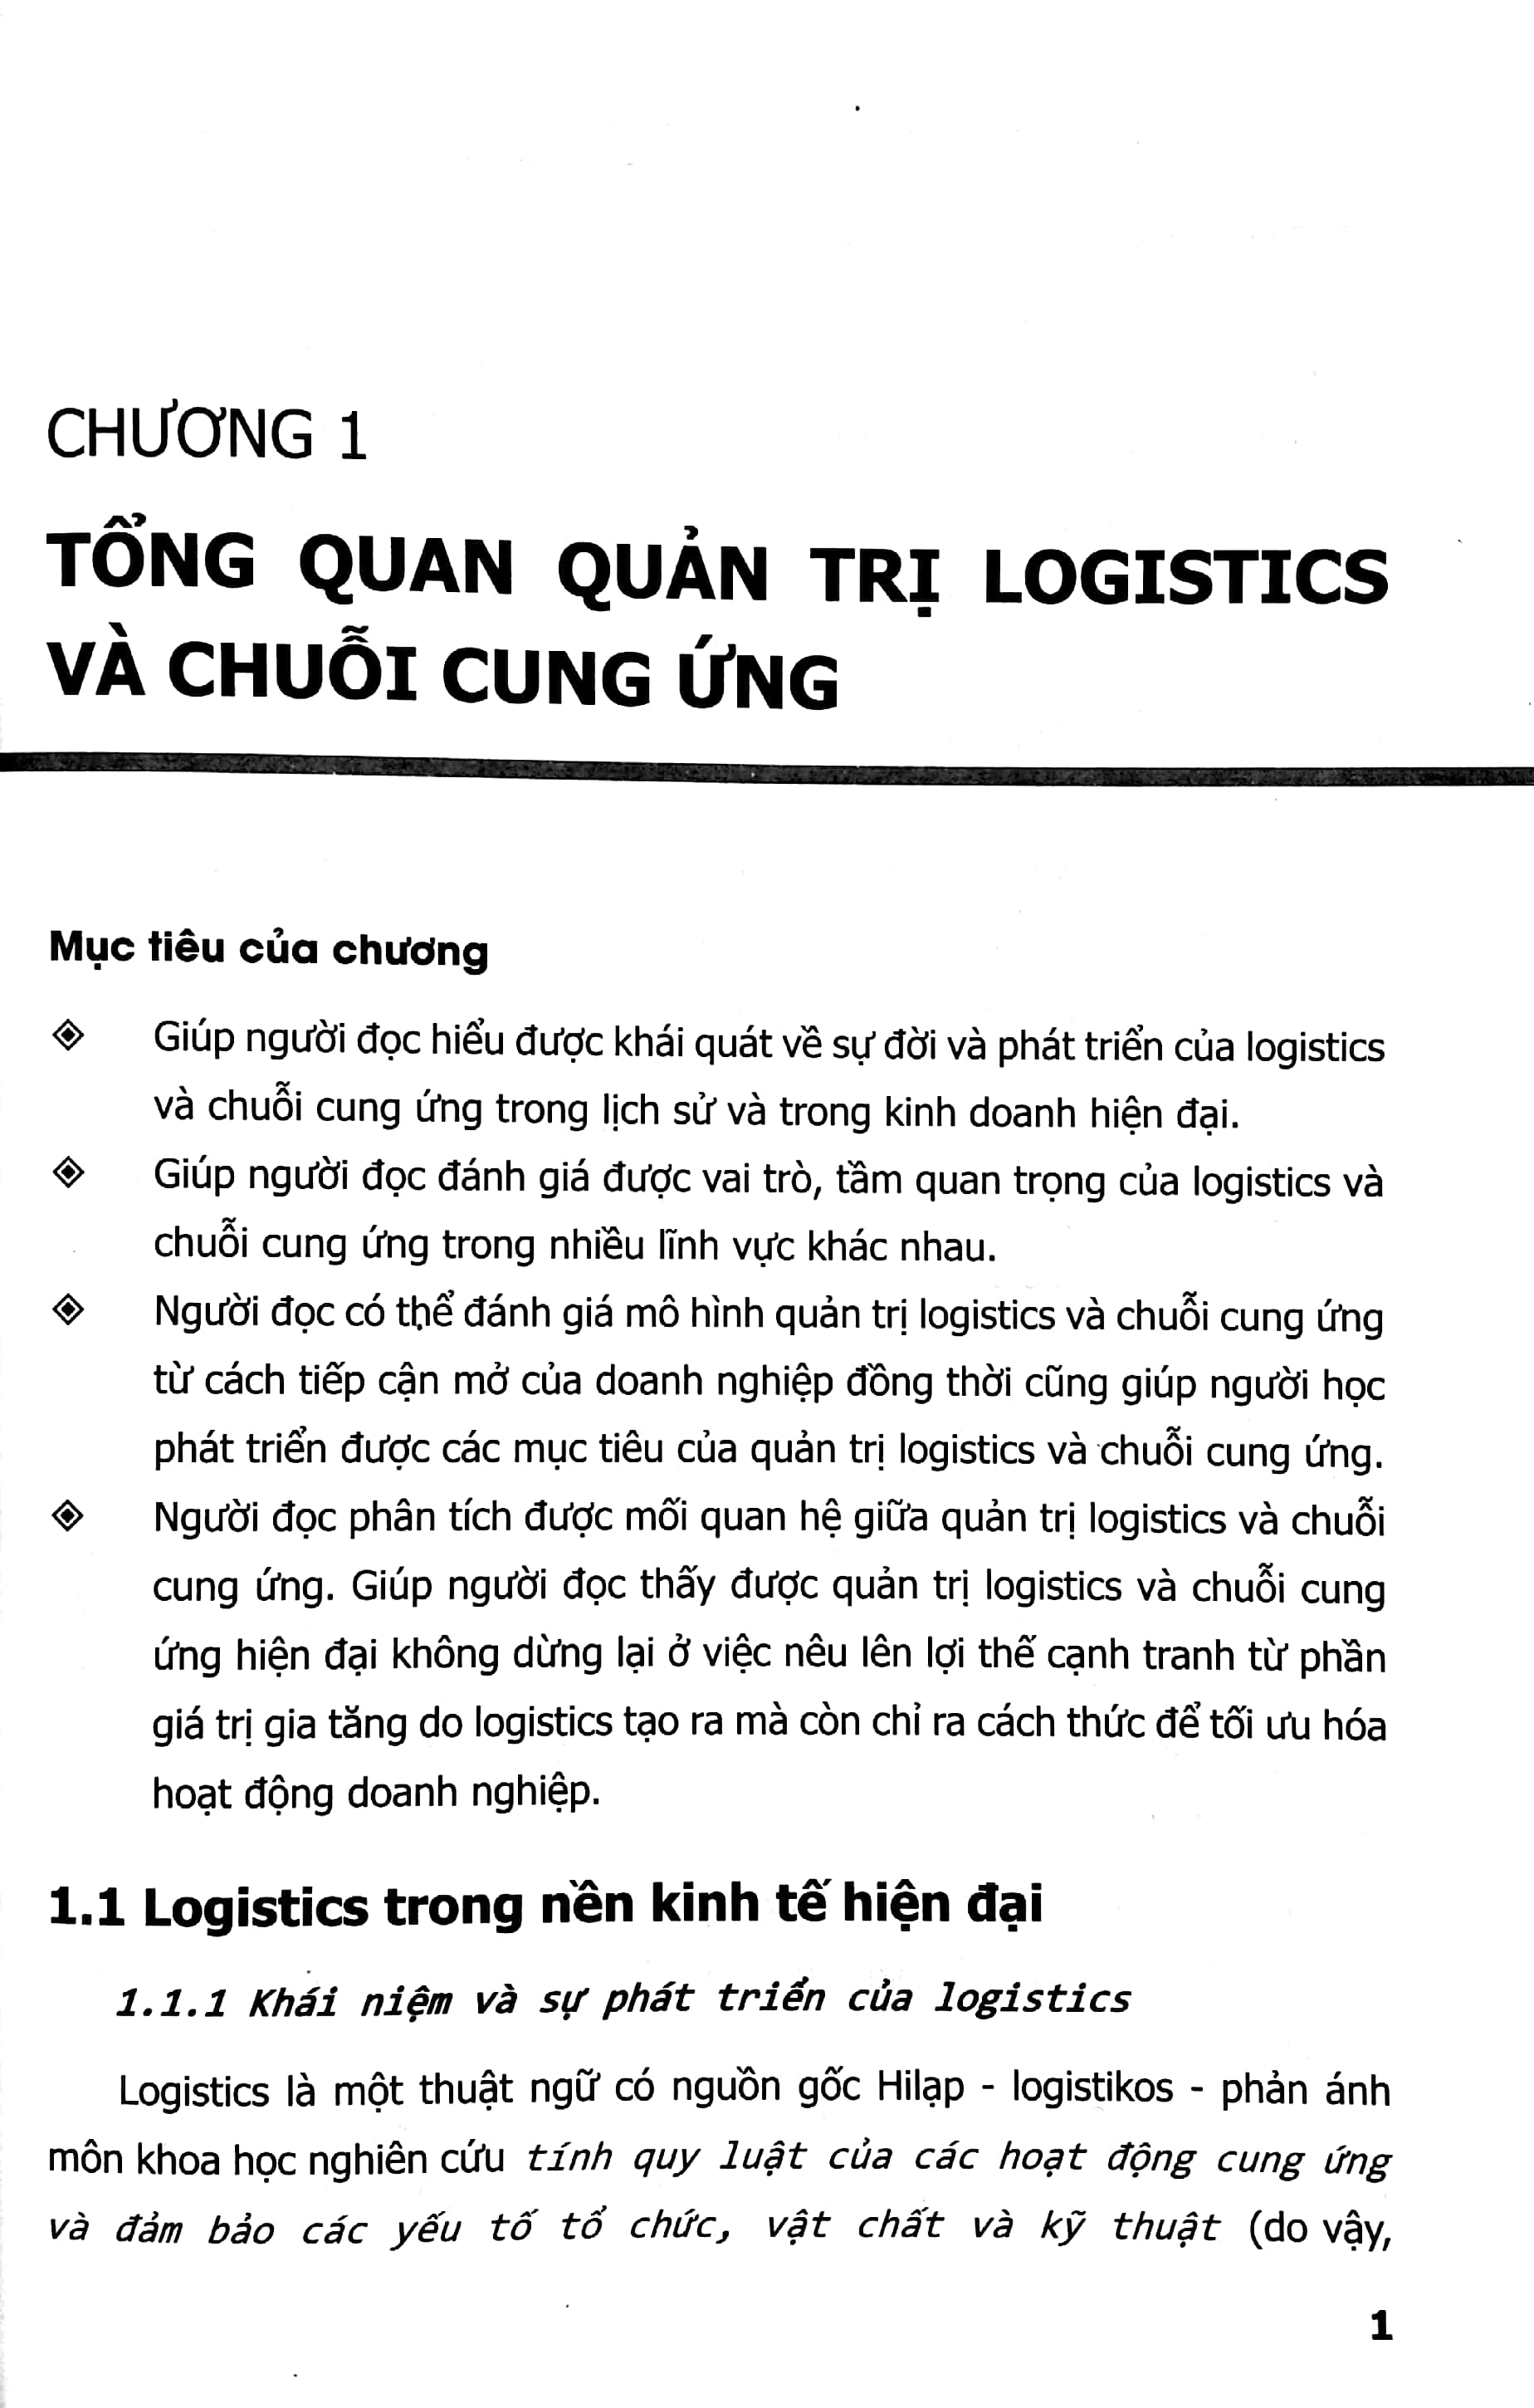 Quản Trị Logistics Và Chuỗi Cung Ứng PDF